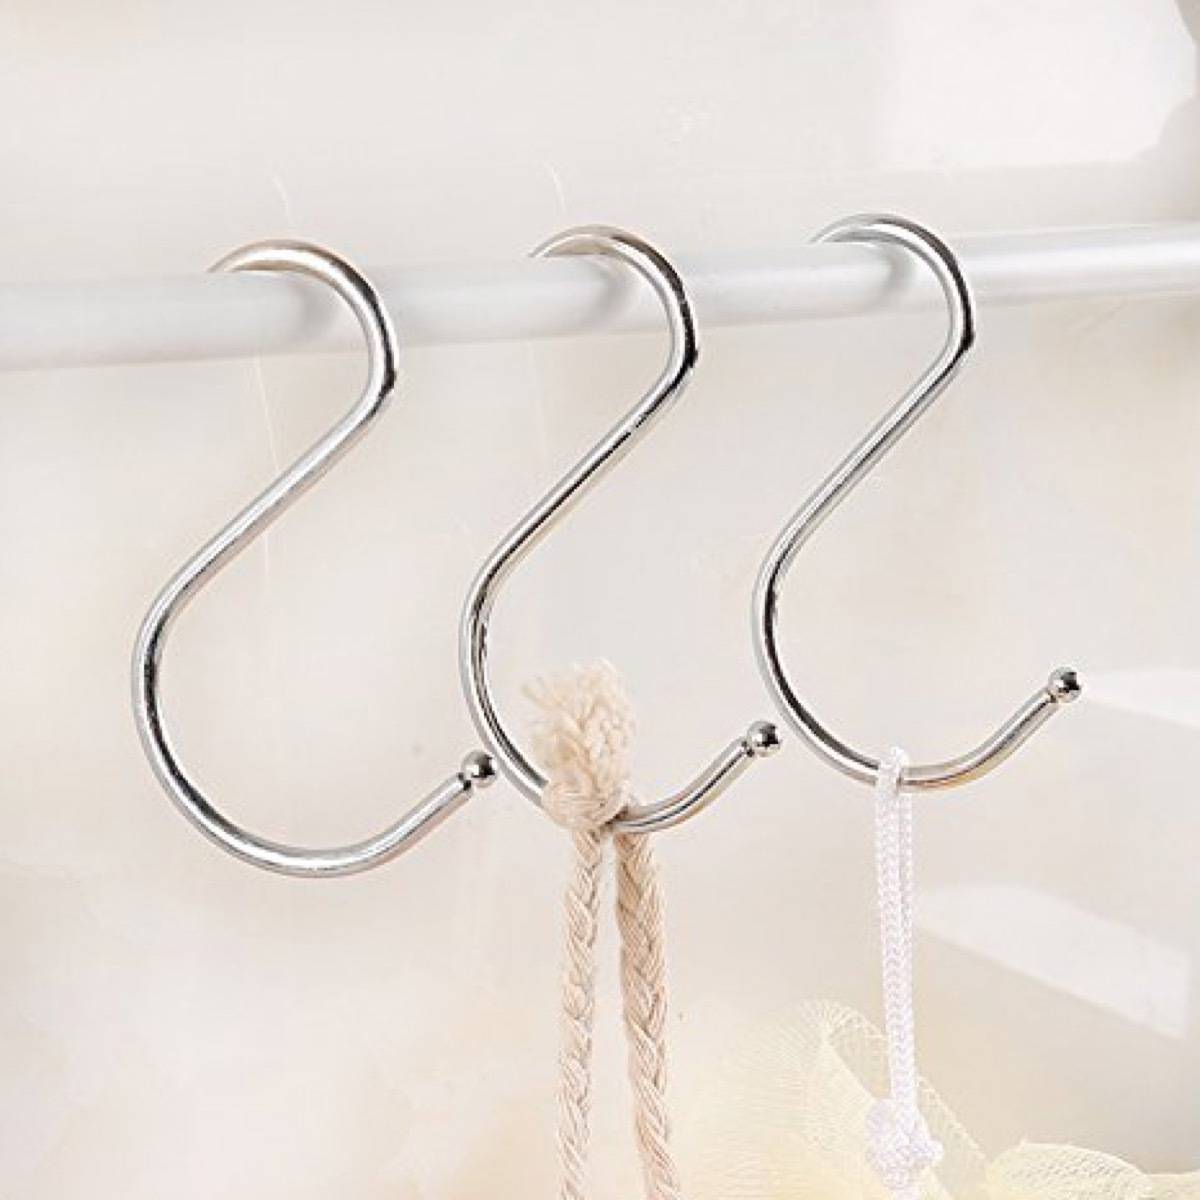 S-shaped hooks